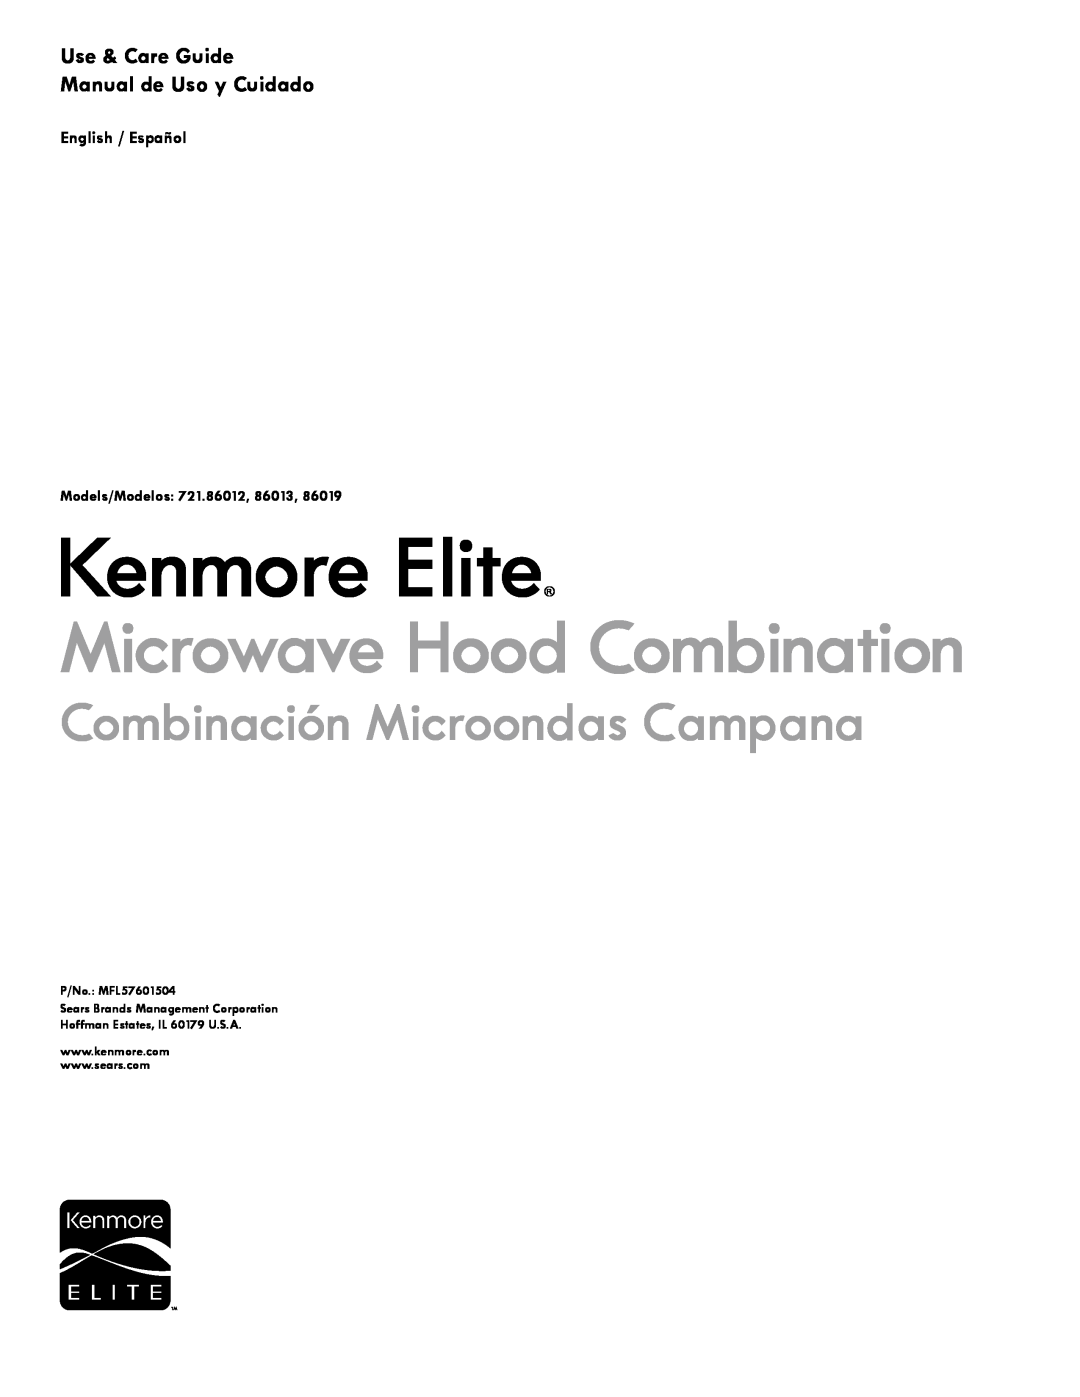 Kenmore 86019 manual Use & Care Guide Manual de Uso y Cuidado, Kenmore Elite, Microwave Hood Combination, Models/Modelos 